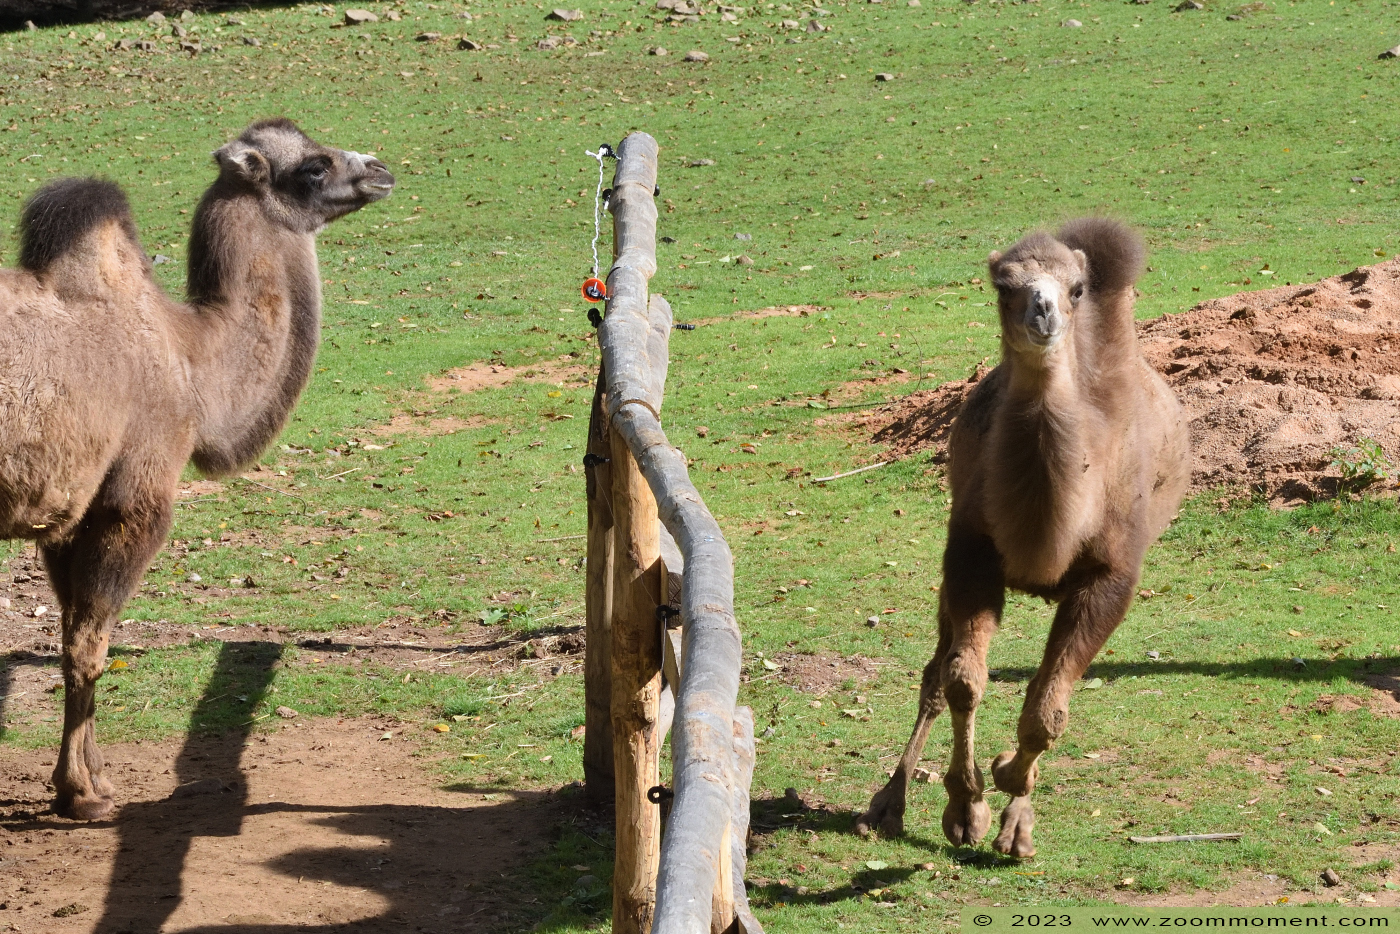 kameel ( Camelus bactrianus bactrianus ) camel
Trefwoorden: Neunkircher Zoo Germany kameel Camelus bactrianus bactrianus camel